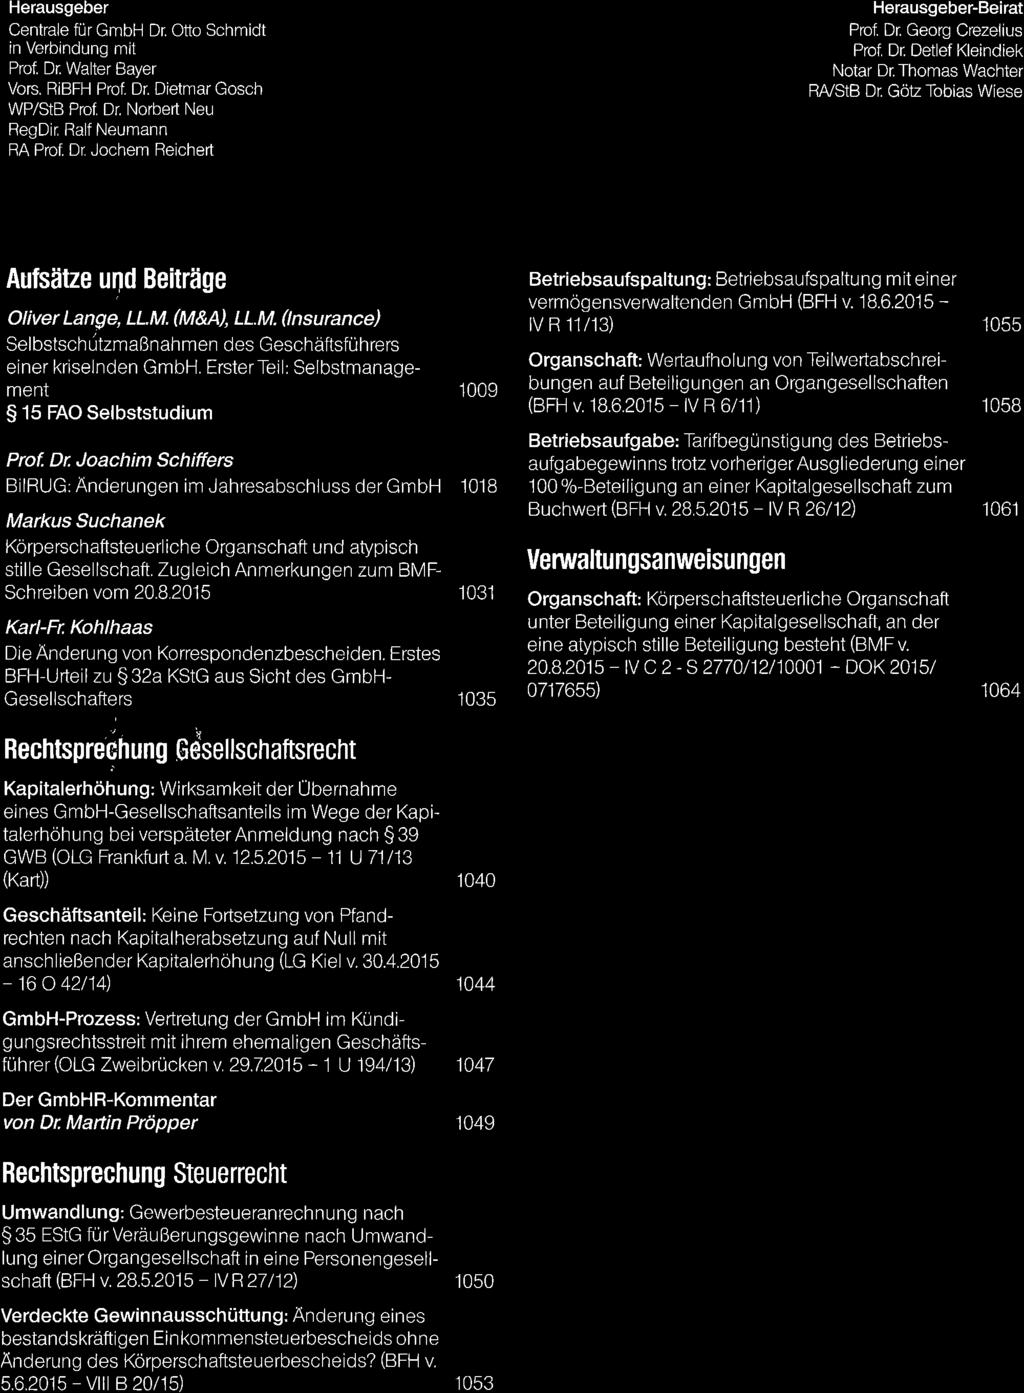 1e/20151R2e1 Herausgeber Centrale fur GmbH Dr. Otto Schmidt in Verbindung mit Prof Dr Walter Bayer Vors. R BFH Prol Dr. Dietmar Gosch WP/StB Prof, Dr. Norbert Neu RegDir Ralf Neumann RA Prot Dr.